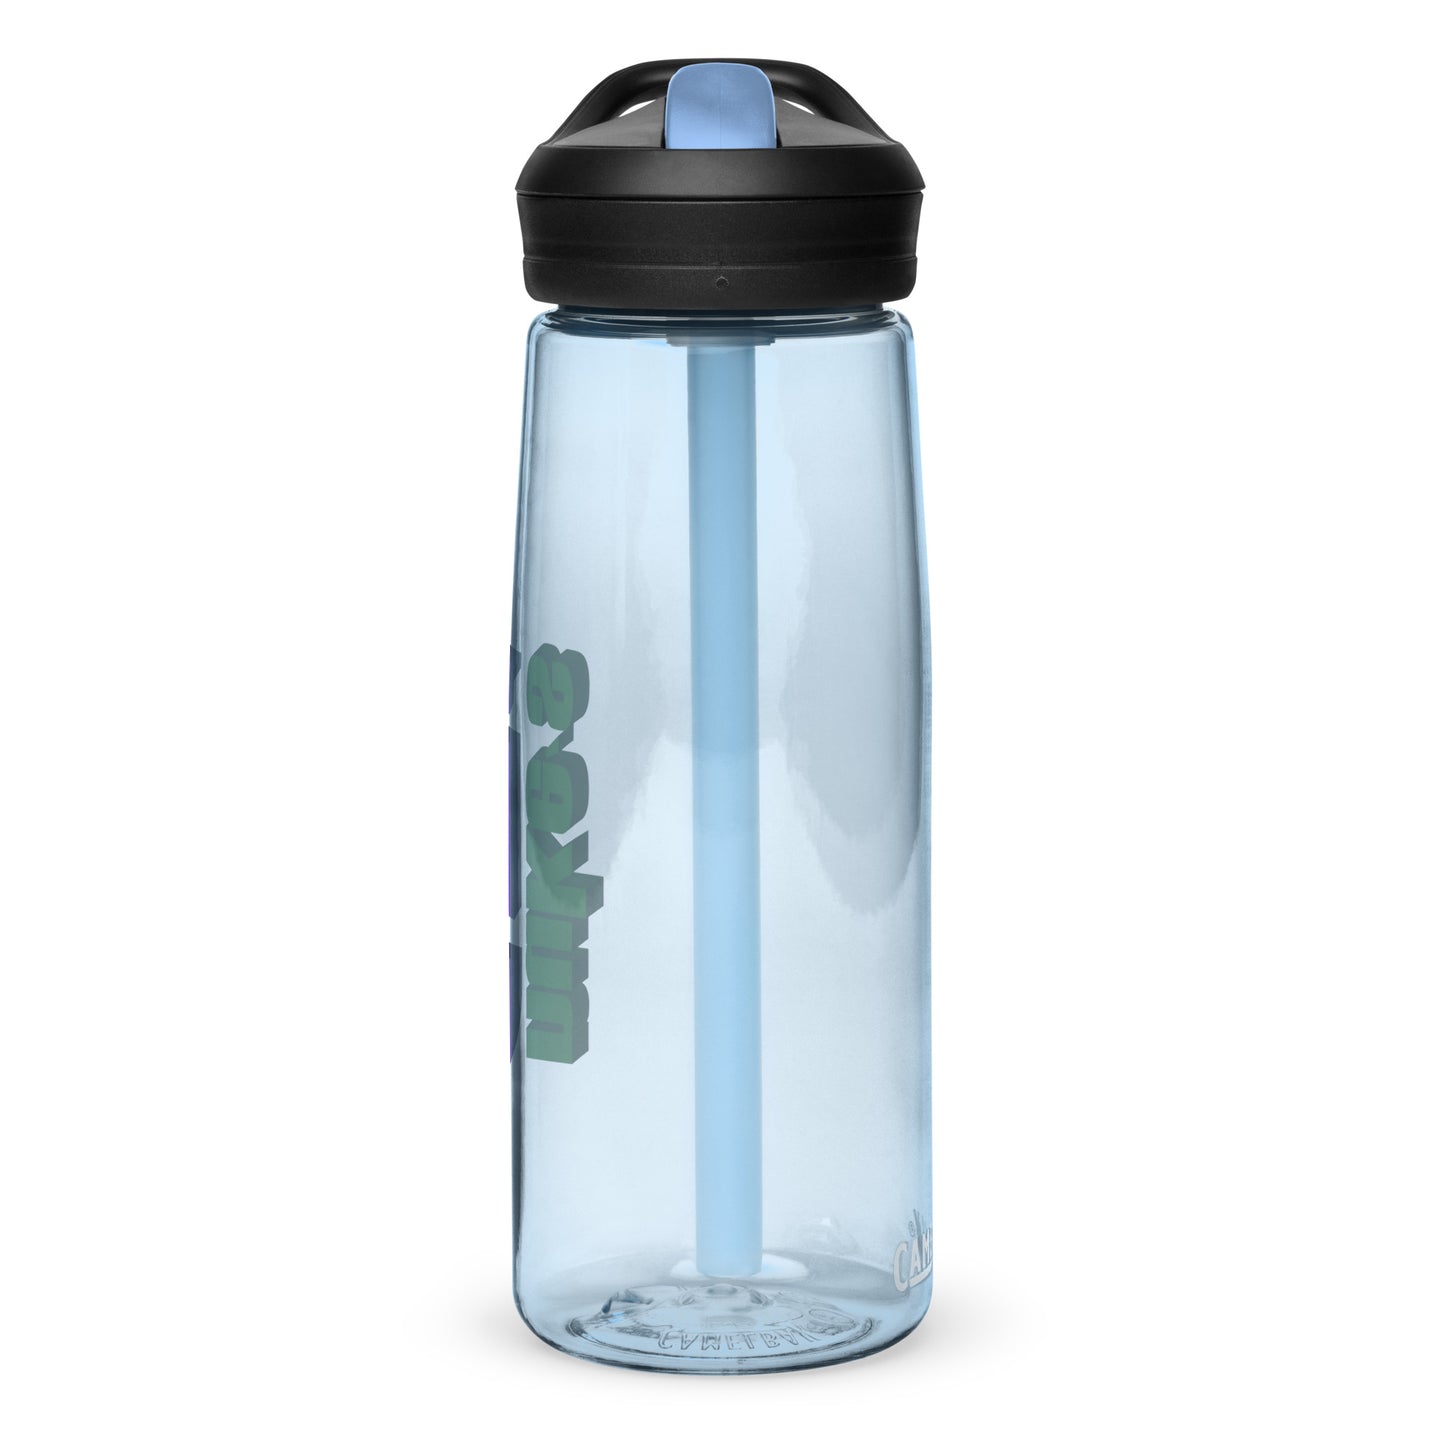 Nuke's Top 5 Water Bottle